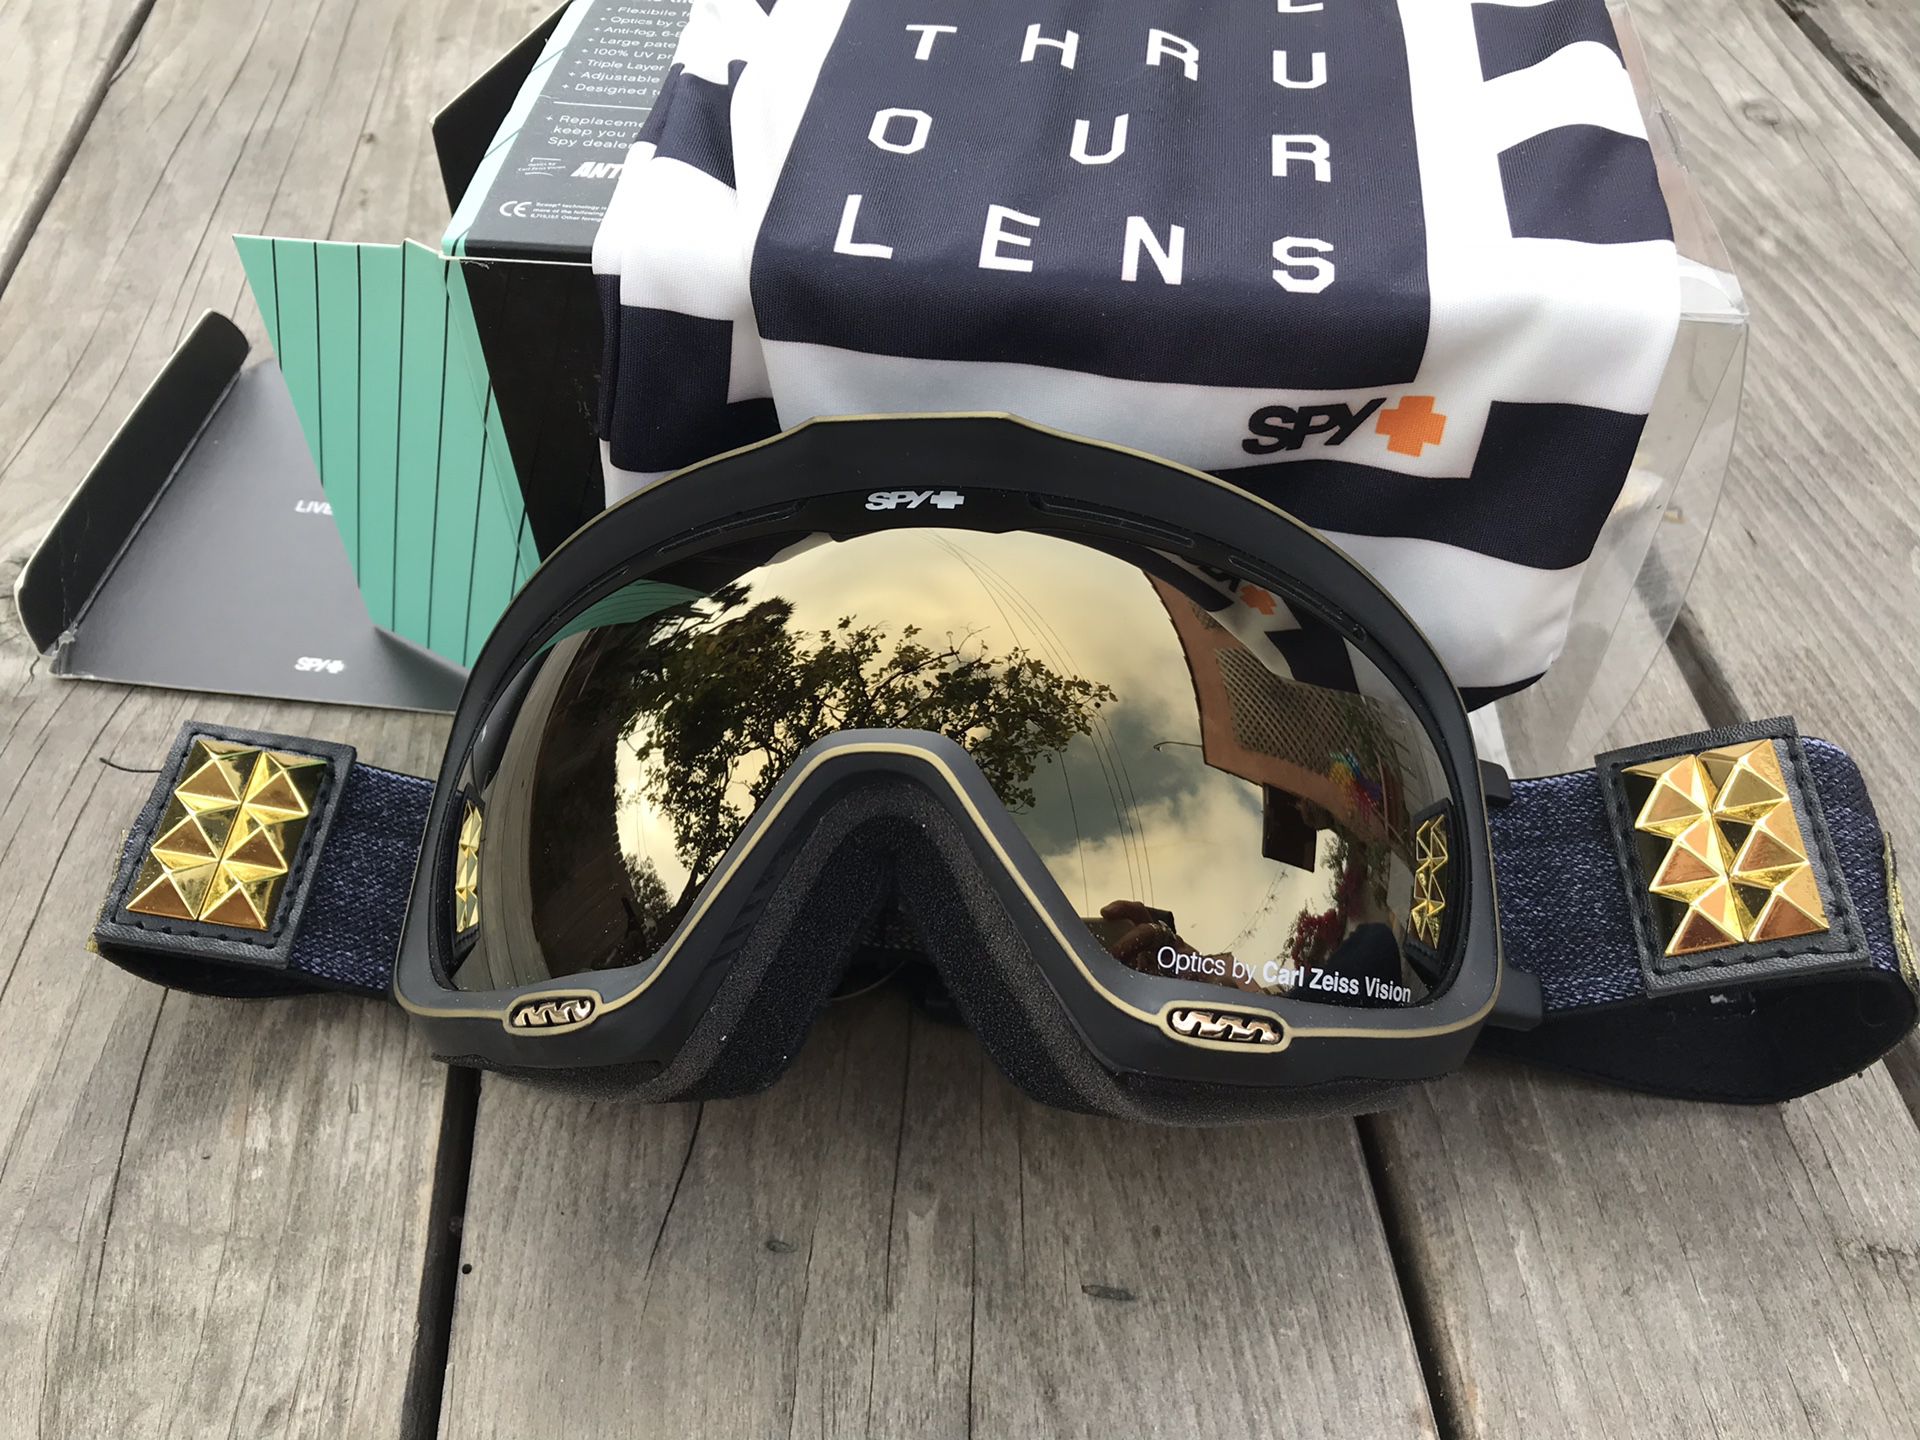 Carl Zeiss SPY ski / snowboard goggles